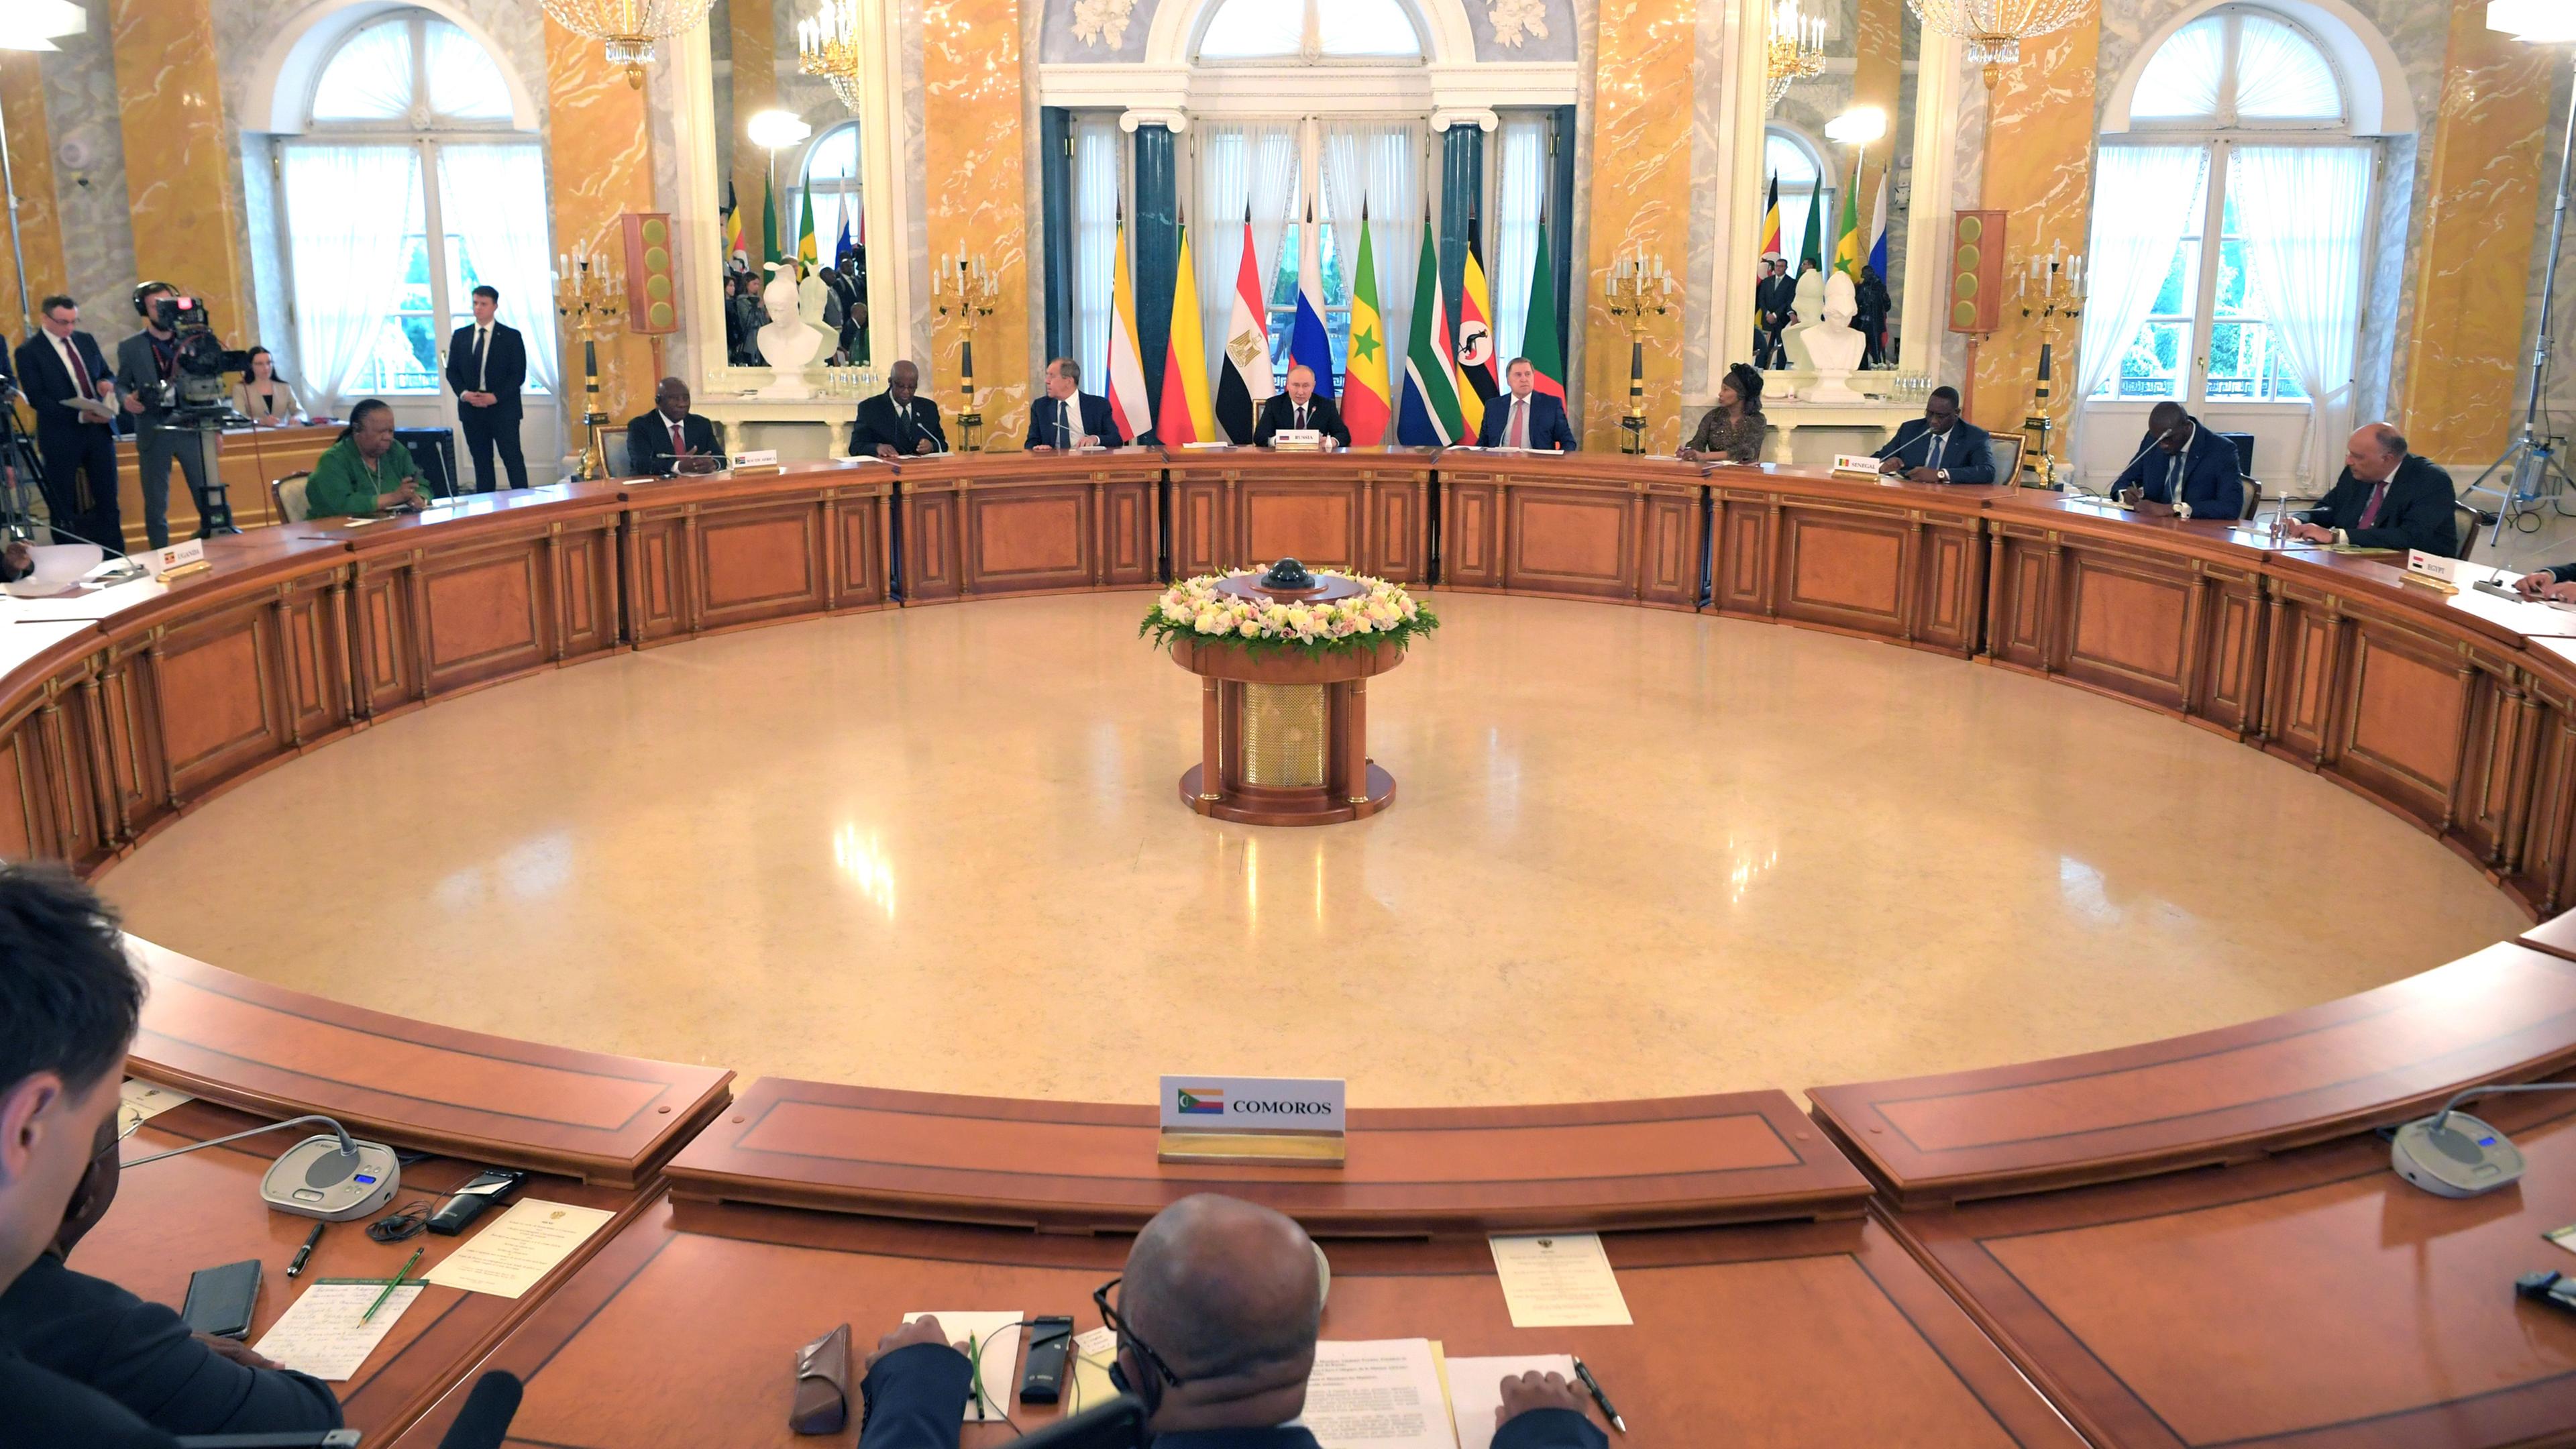 Wladimir Putin und eine Delegation afrikanischer Staats- und Regierungschefs sitzen am kreisförmig angeordneten Tischen.